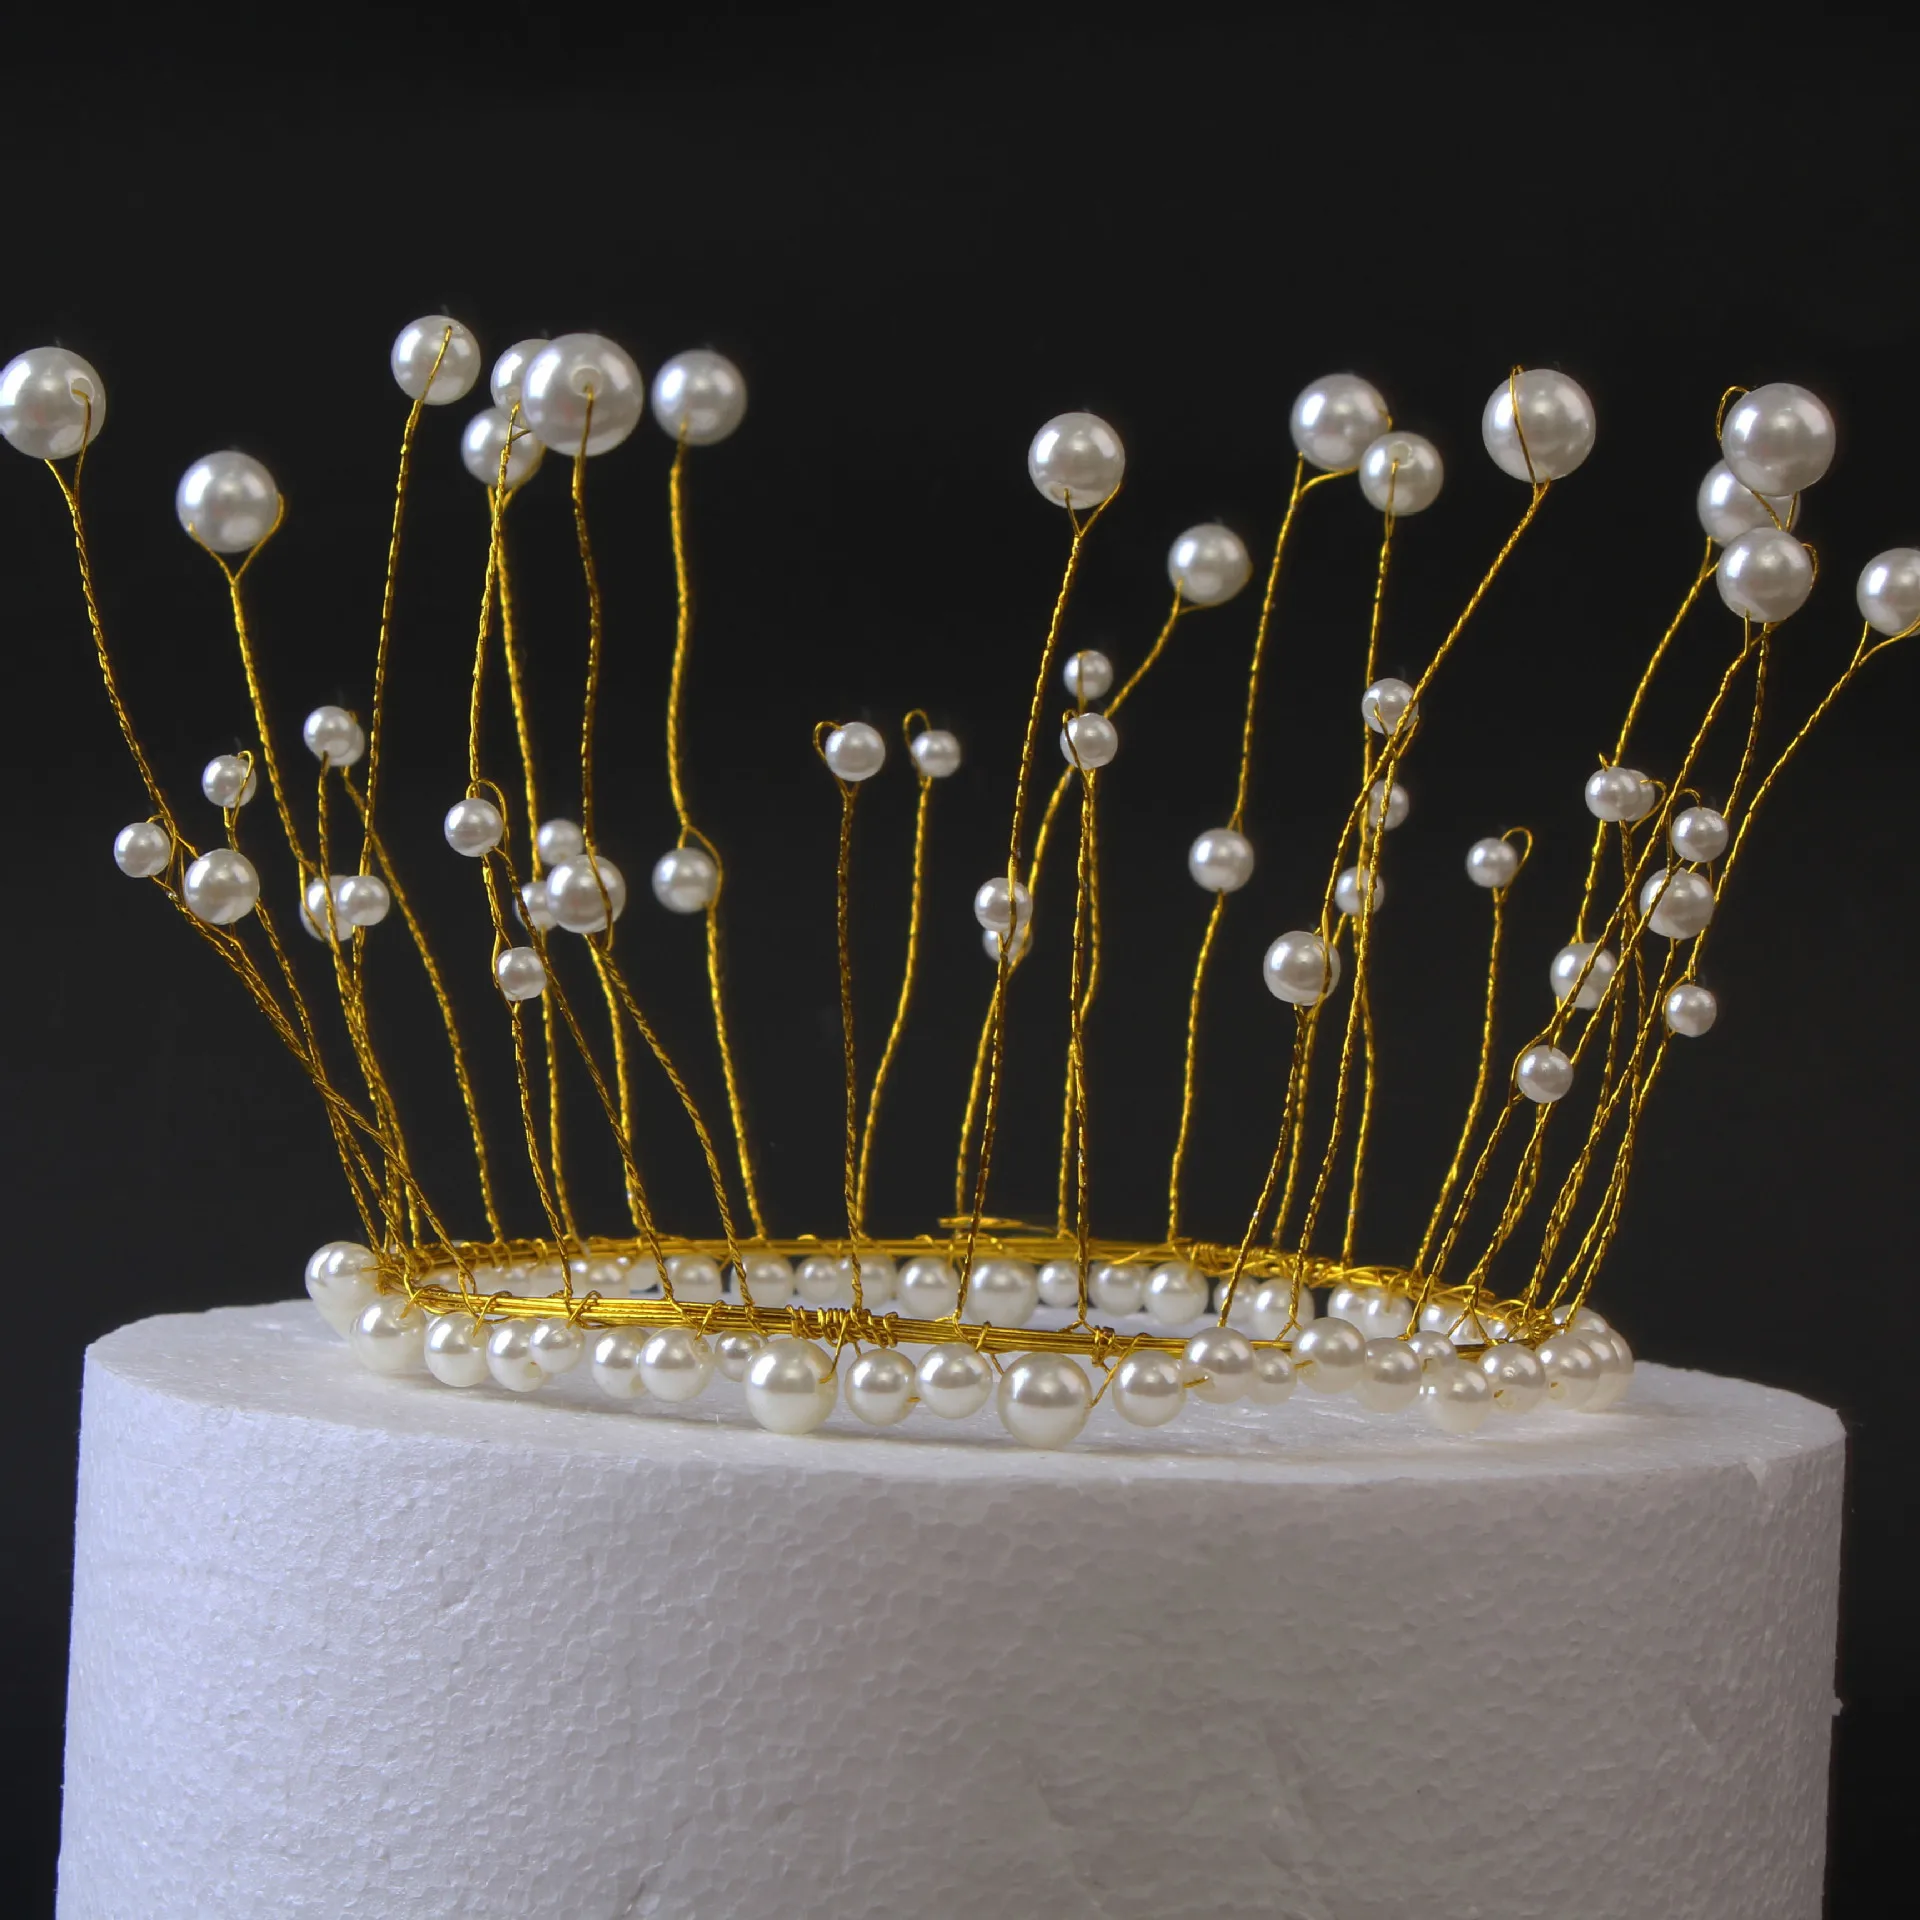 Блестящий Жемчуг ручной работы Принцесса Корона торт Топпер свадебный торт украшение невесты и жениха шляпа "с днем рождения" торт украшение